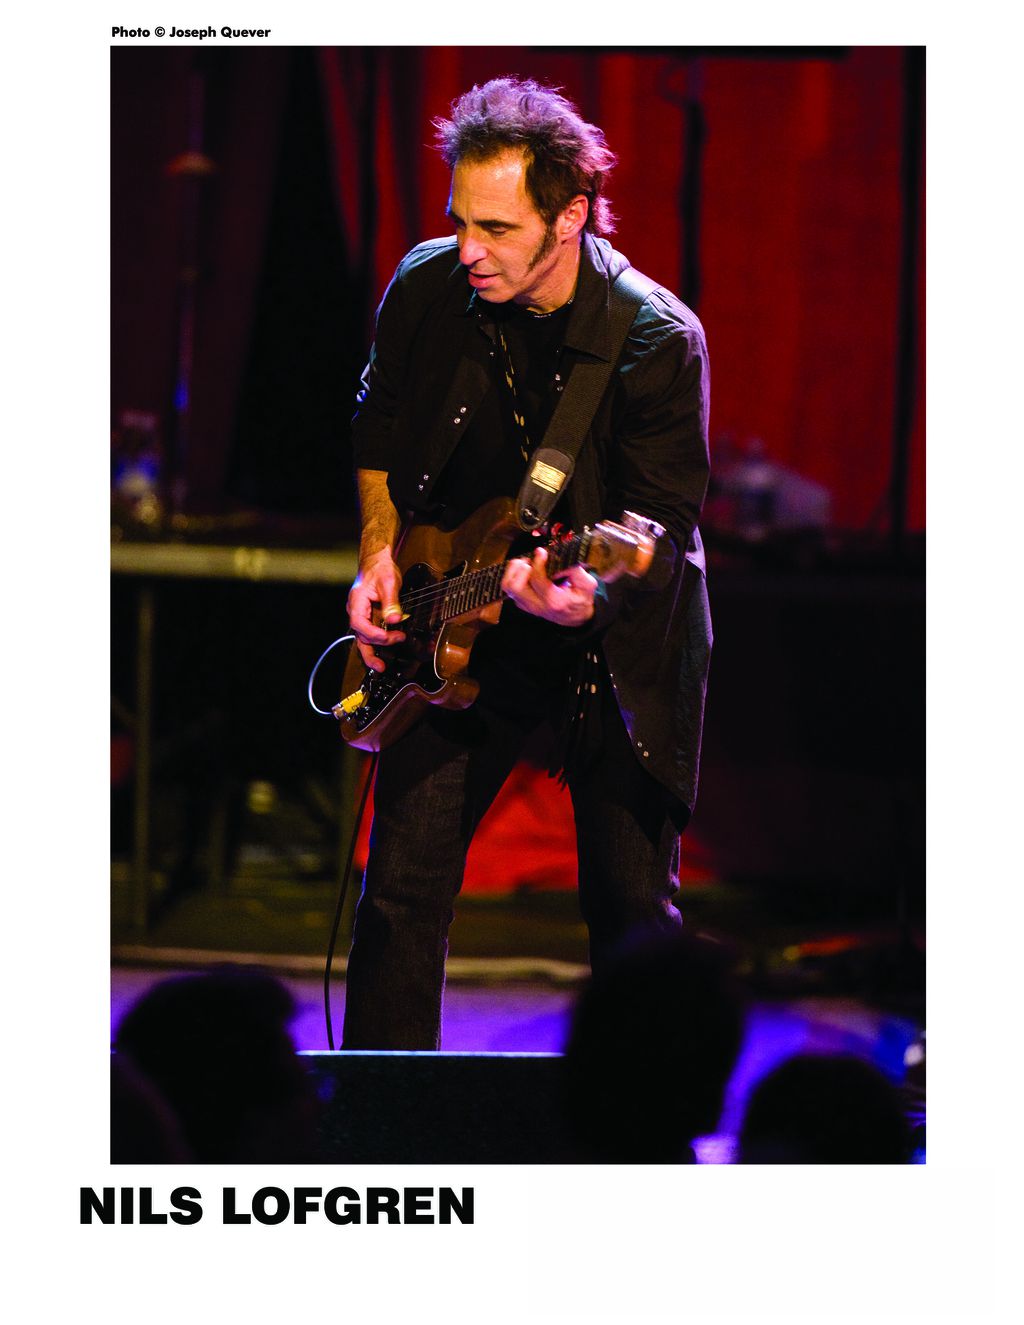 Guitarrista da E Street Band, ao lado de Bruce Springsteen, desde 1984, Nils Lofgren se juntou a Neil Young no boicote ao Spotify (Imagem: Reprodução/Joseph Quever)